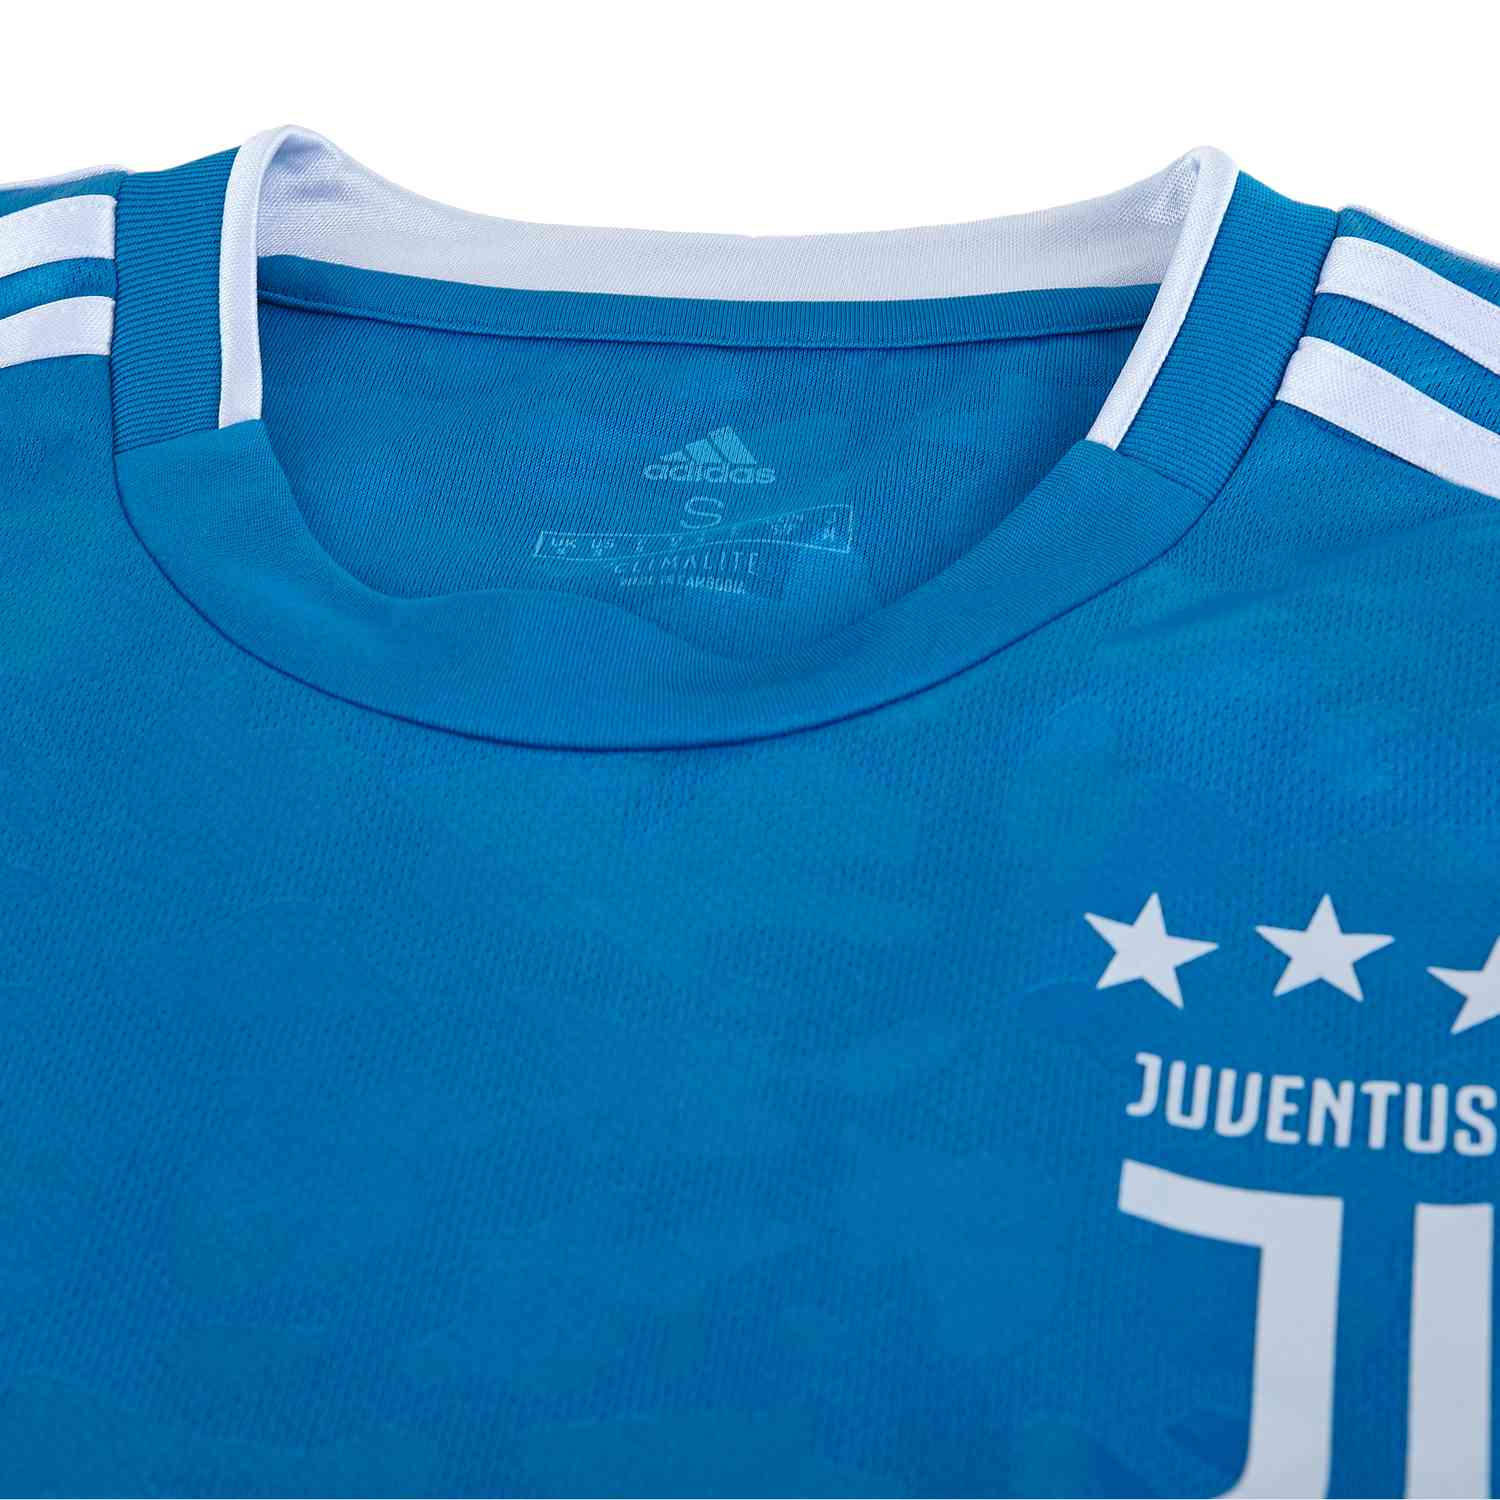 201920 Adidas Juventus 3rd Jersey Soccerpro